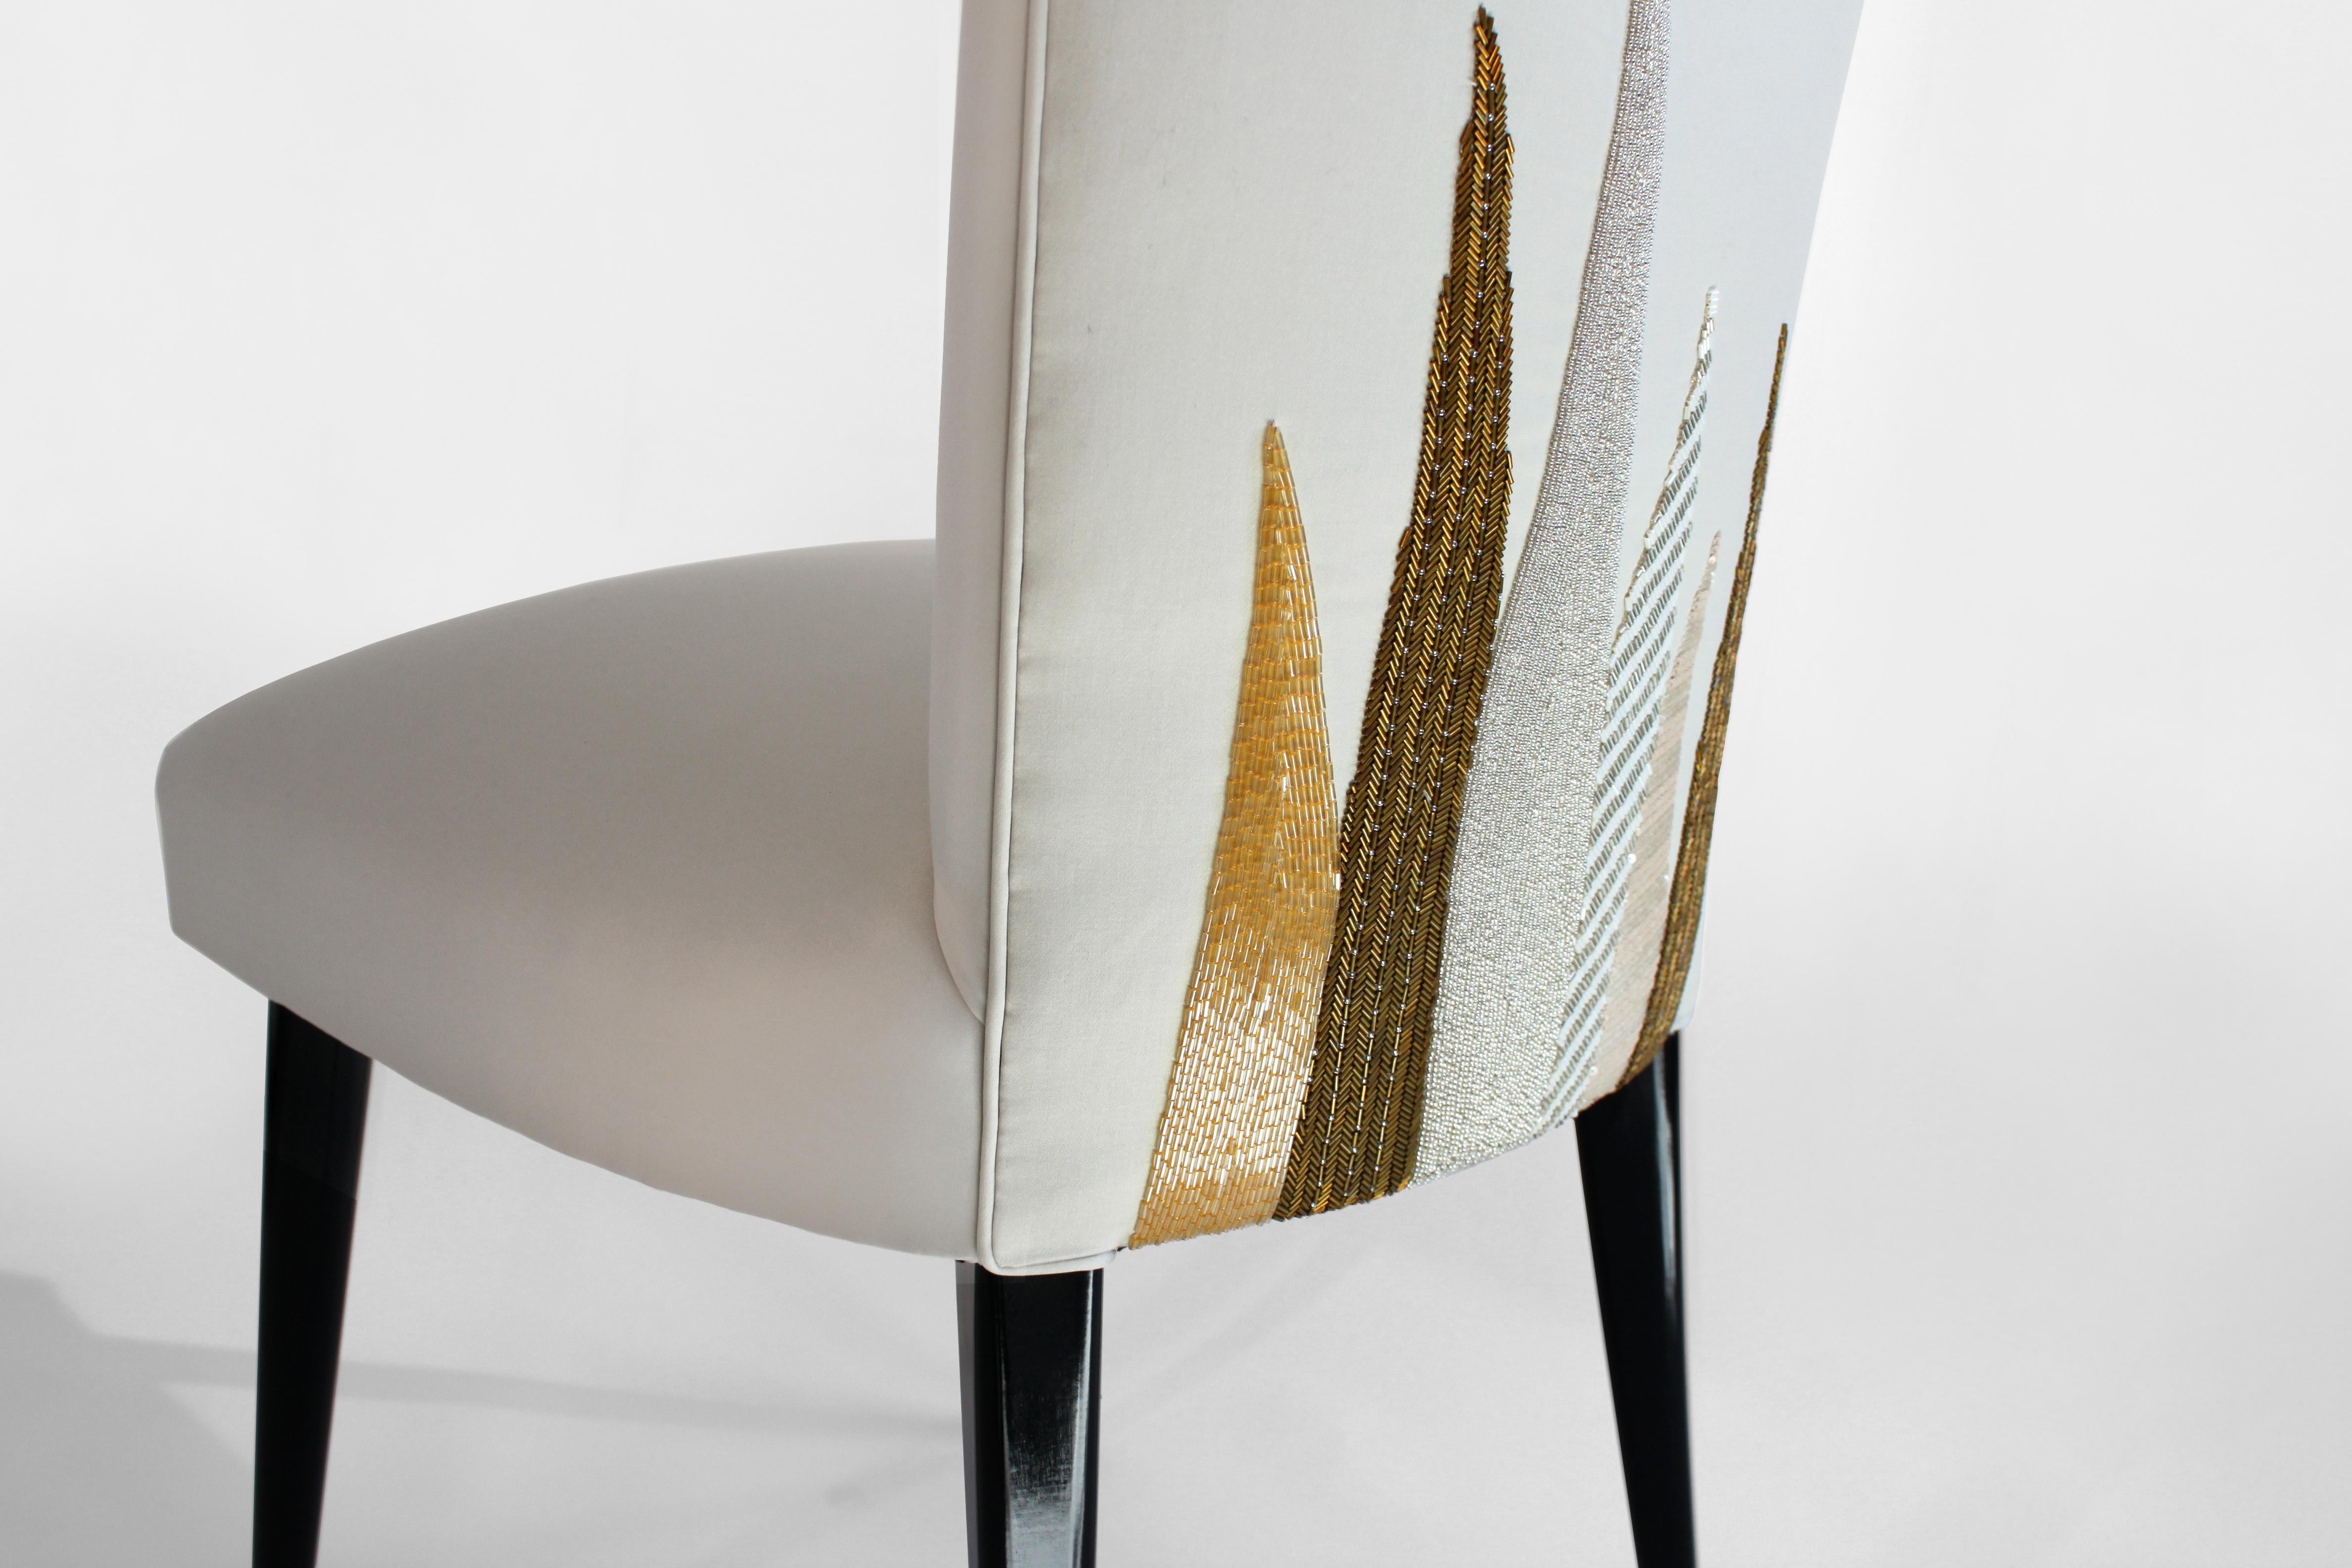 Inspiriert von einer italienischen Silhouette aus den 1950er Jahren, wurde dieser elegante Pantoffelstuhl in unserem Londoner Studio entworfen und individuell gepolstert. Handgekettelt und bestickt in sanften Gold- und Bronze-Metallic-Tönen. 

Das